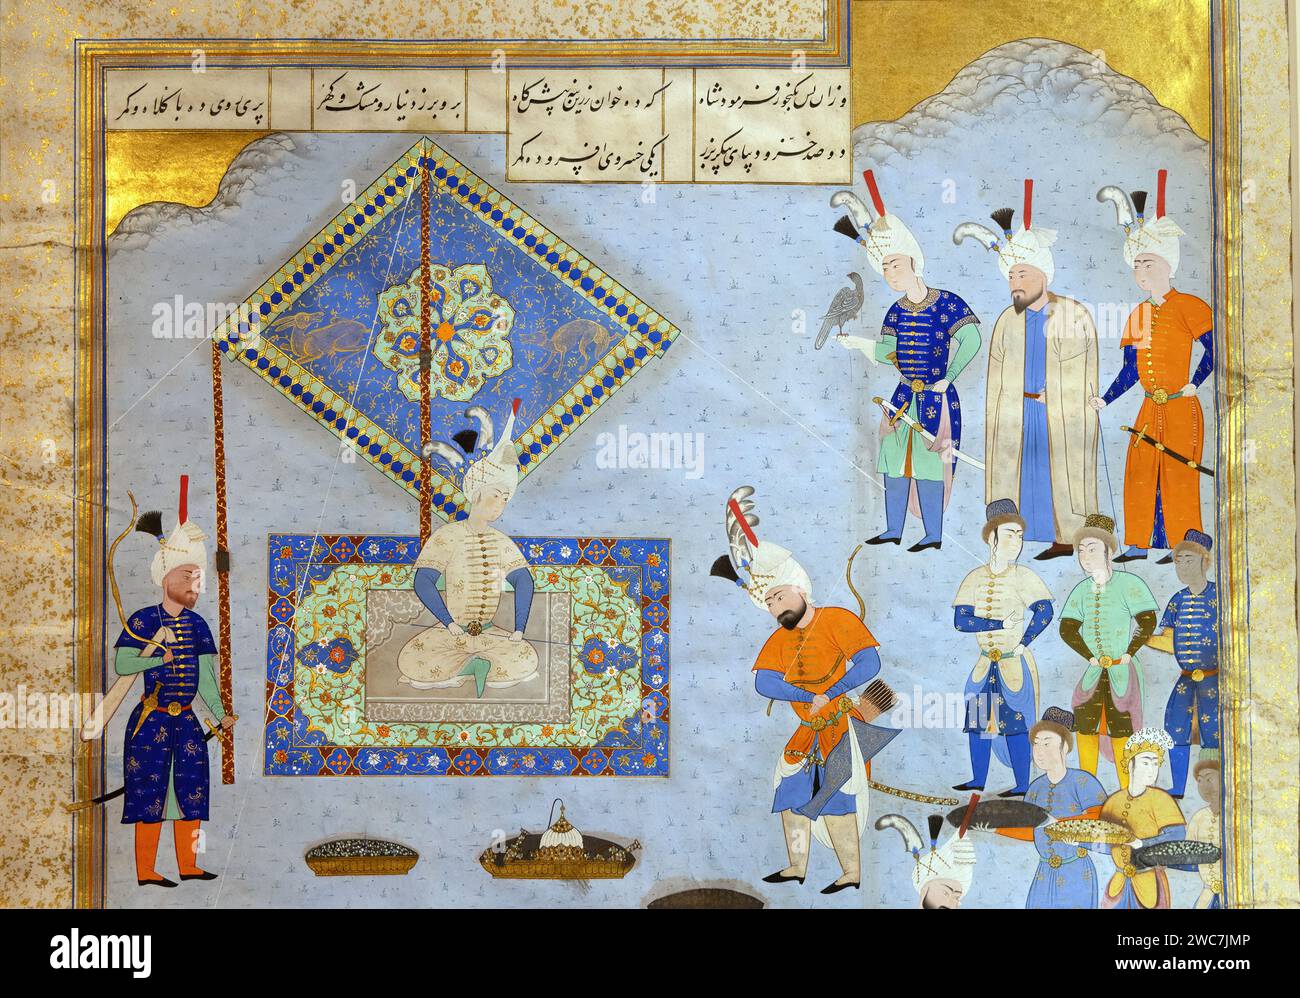 Peinture indienne antique d'un prince recevant ses sujets Banque D'Images